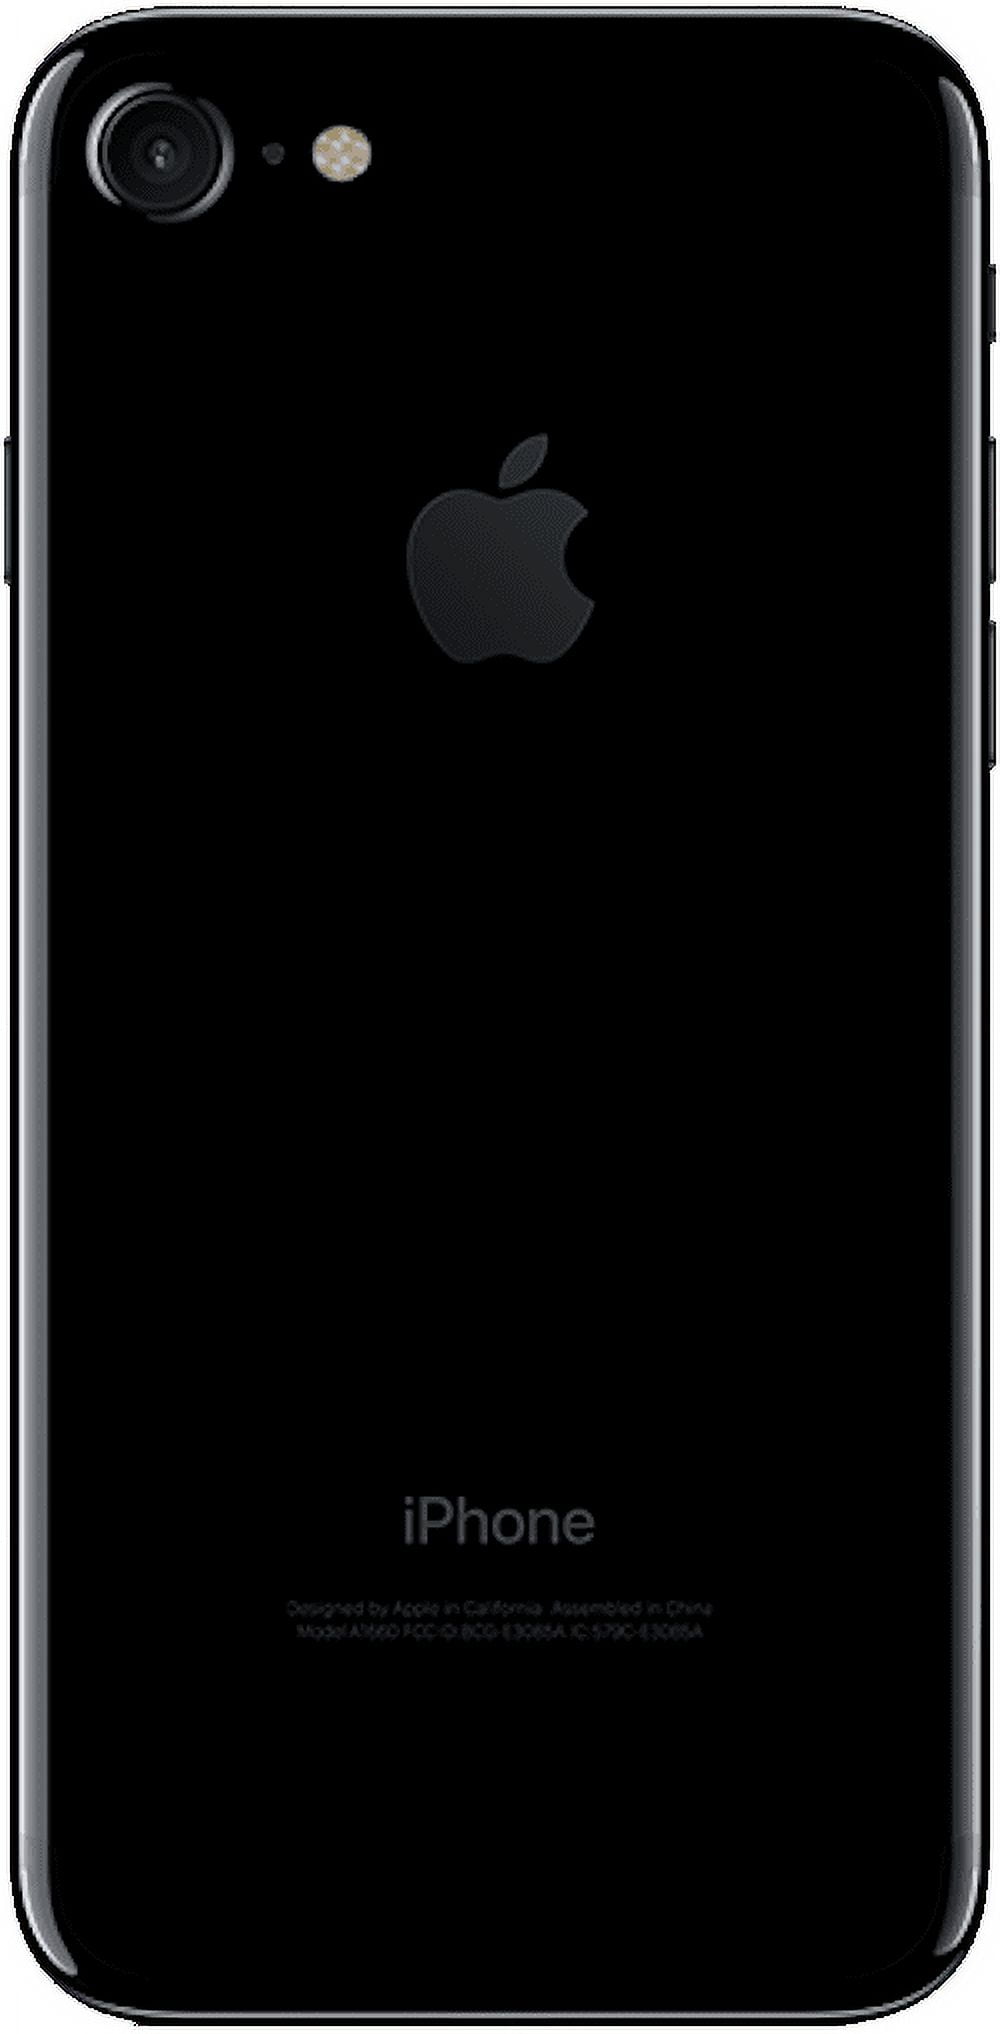 iPhone 7 128GB Jet Black (SIM-free) - Walmart.com